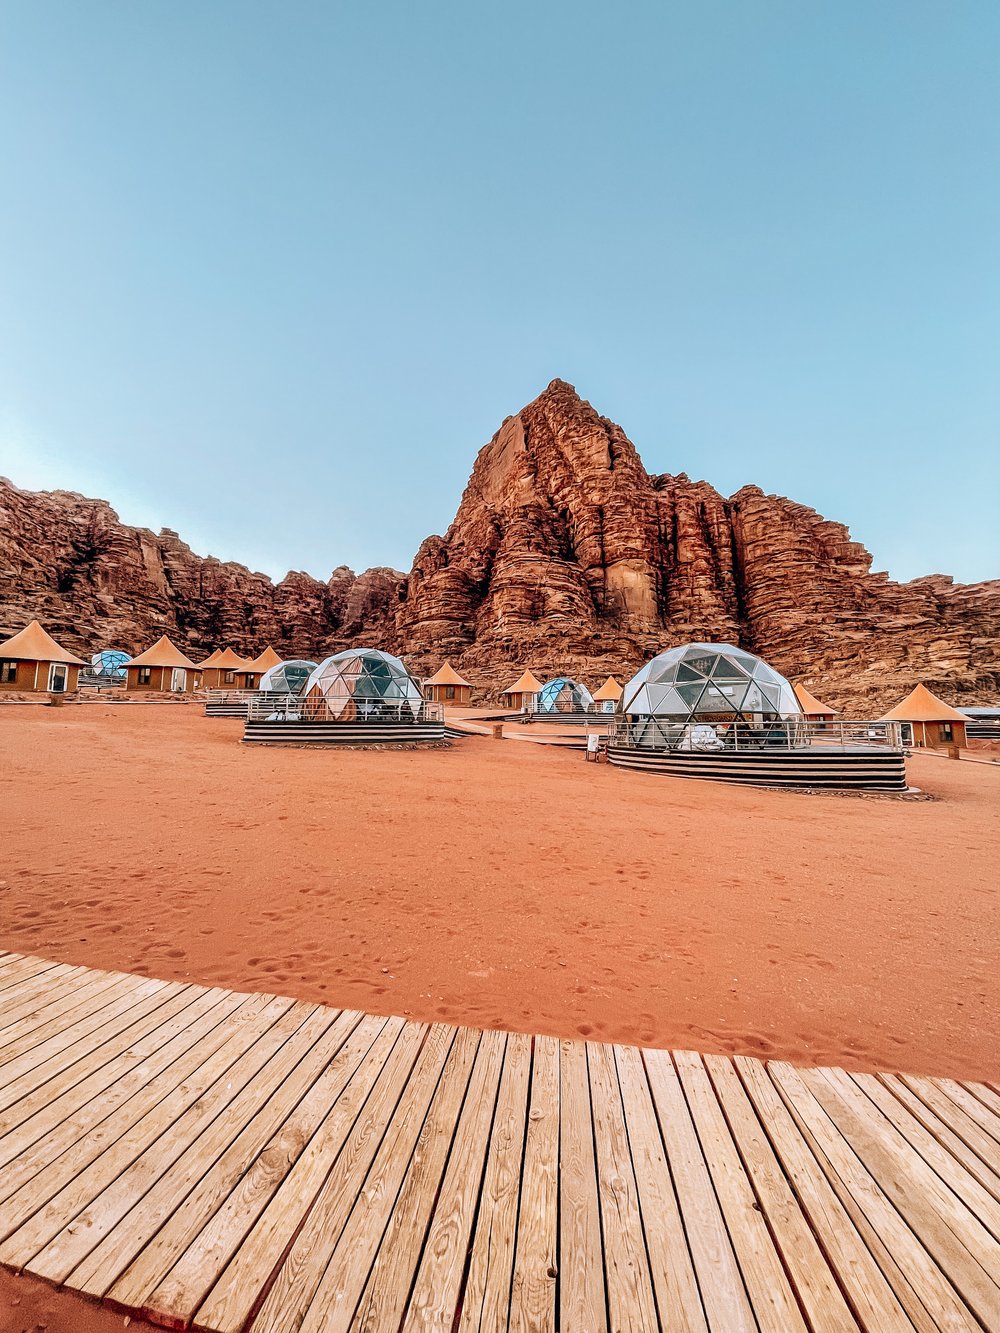 Travel Guide to Jordan - Wadi Rum